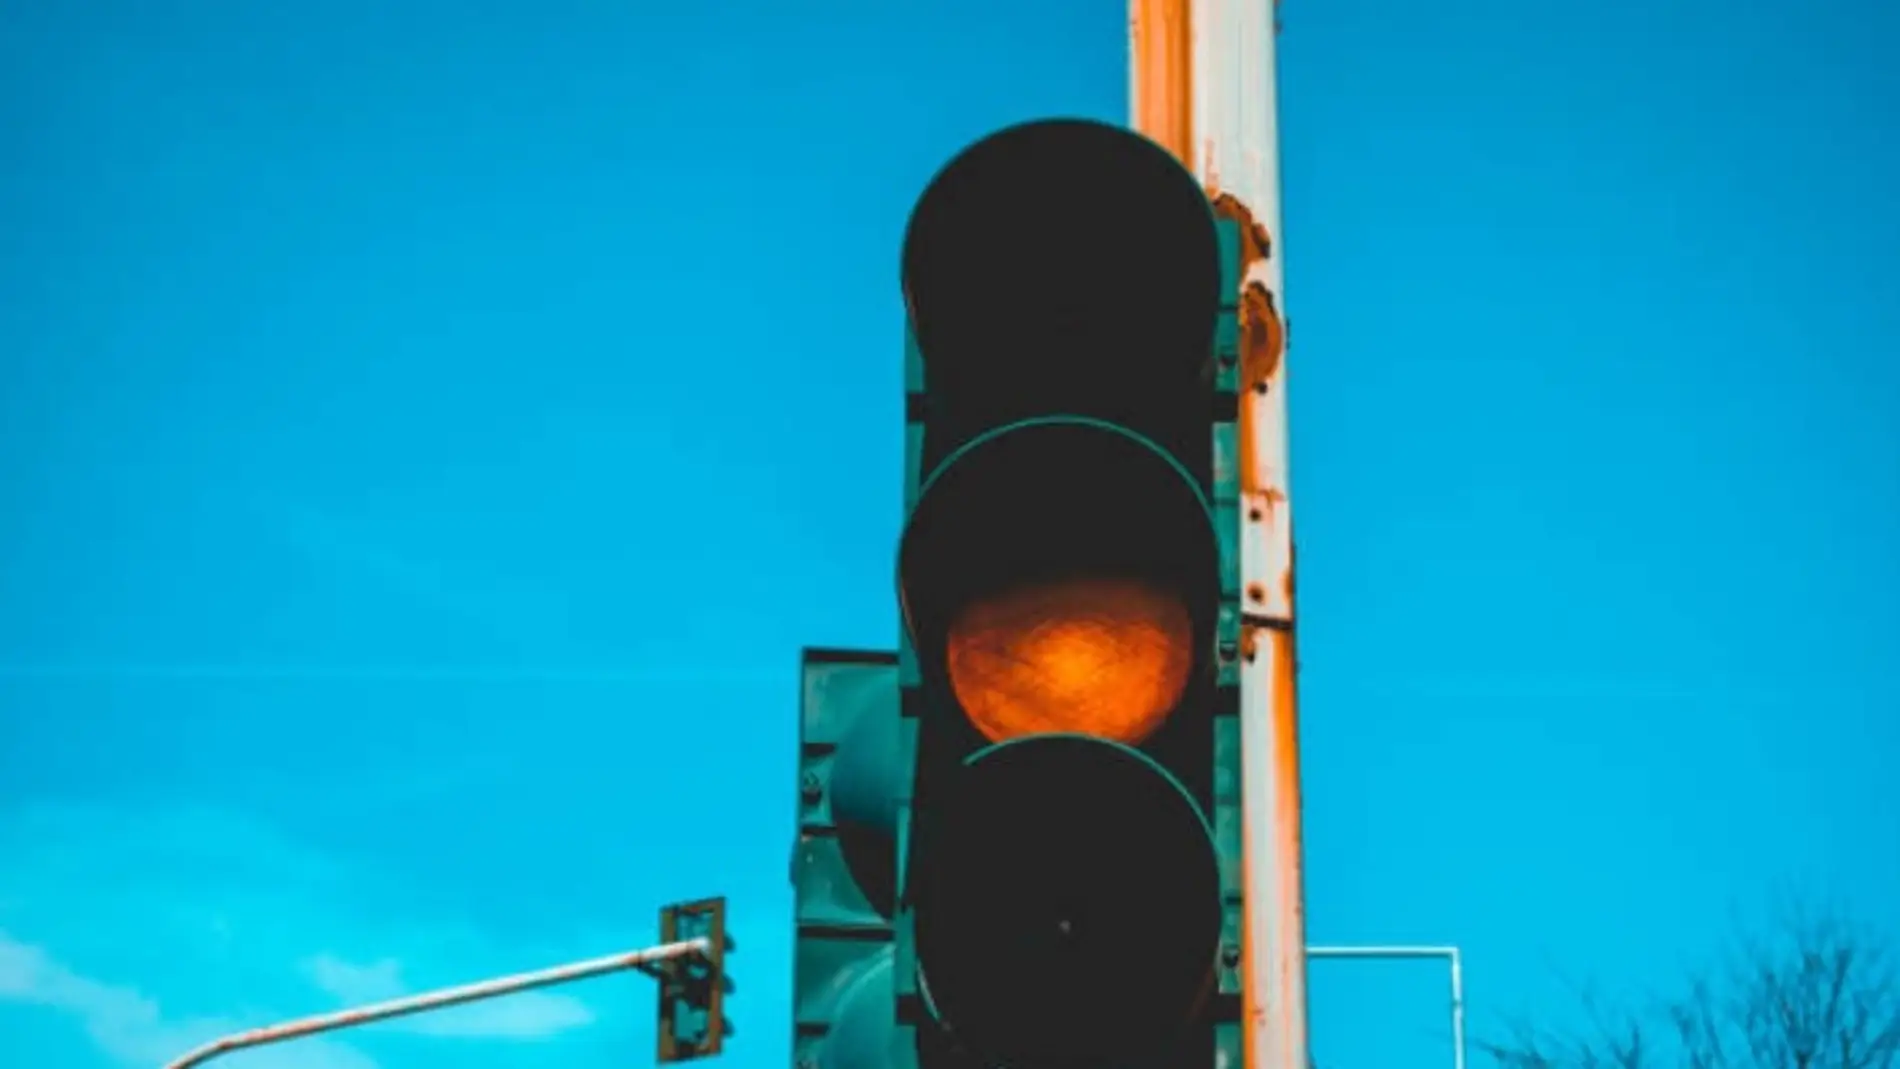 Cruzar un semáforo en ámbar (200€) y otras normas con motivo de multa que desconocías 